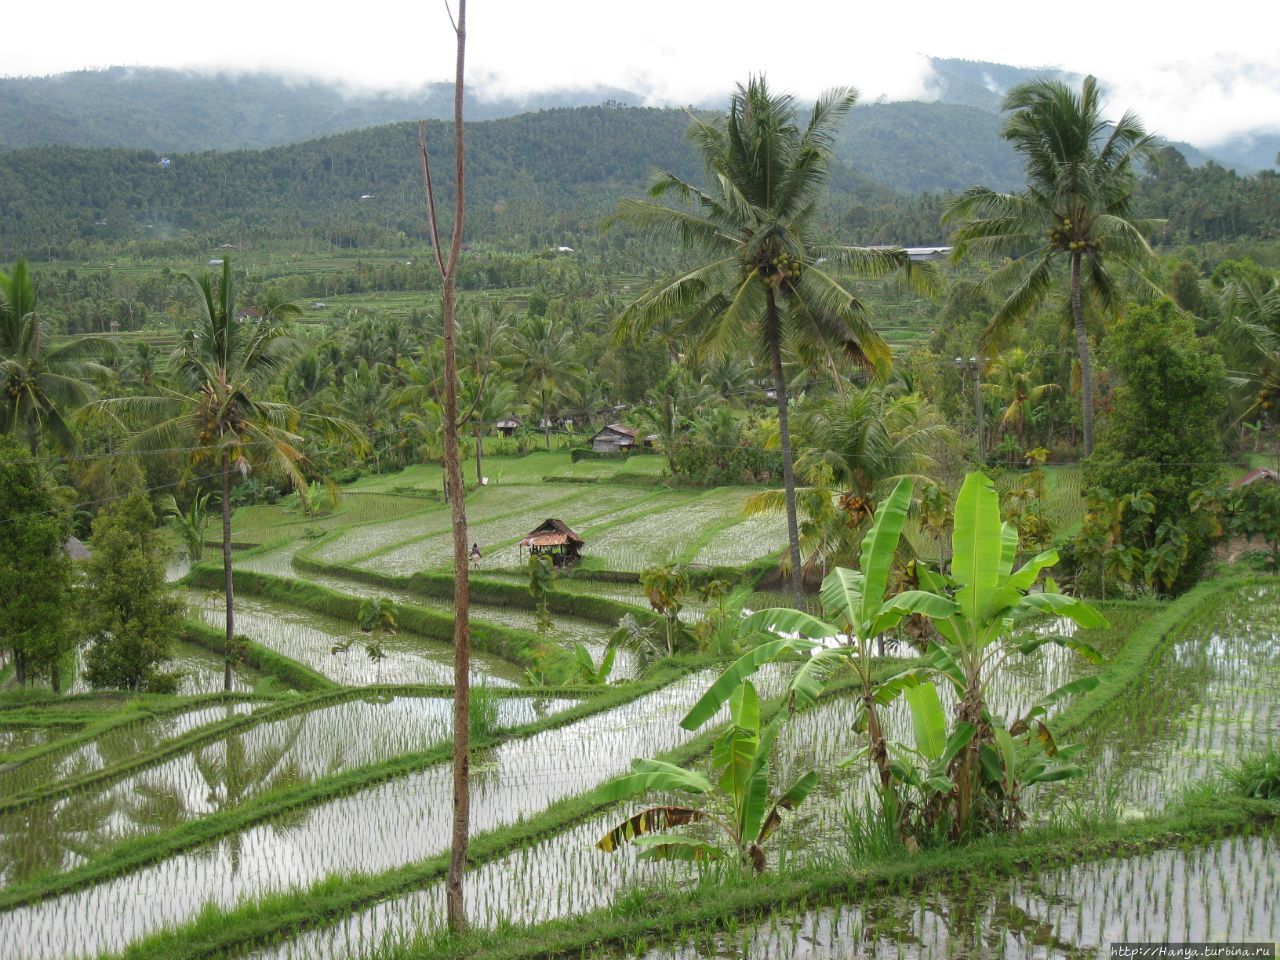 Рисовые поля Мундук / Munduk Rice Fields